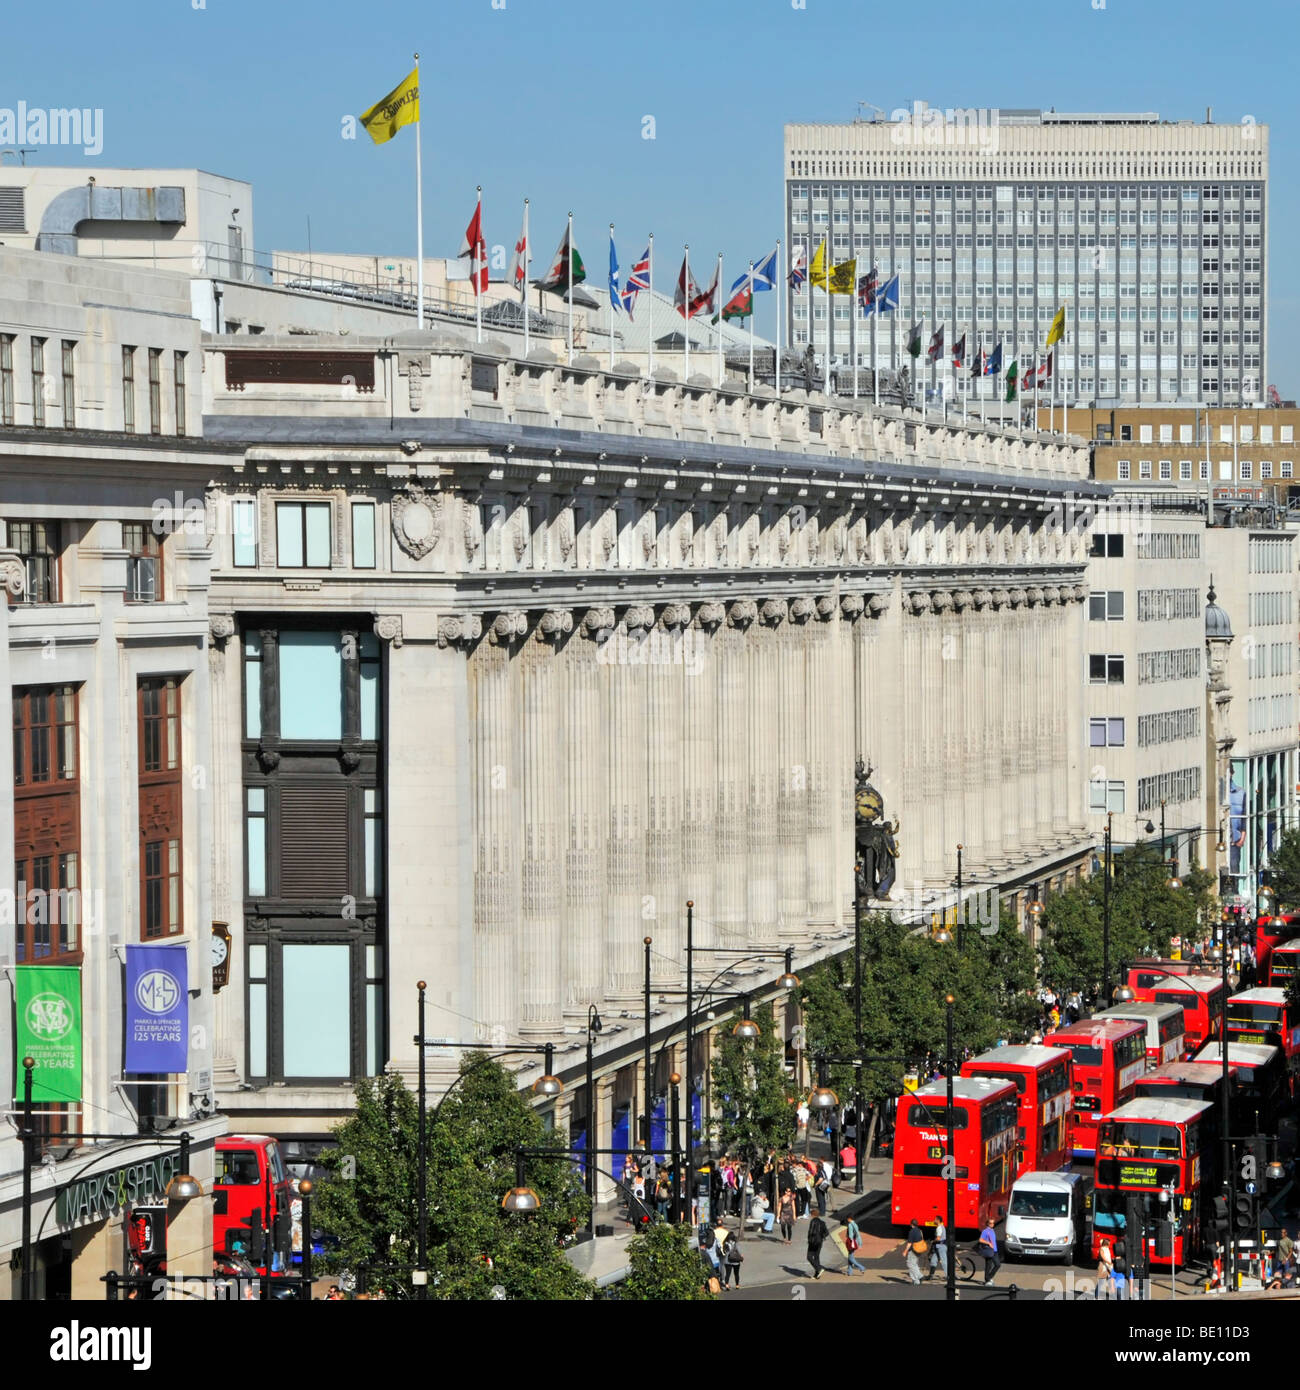 Oxford Street facciata di dal grande magazzino Selfridges con bandiere che sventolano al tetto di livello superiore e autobus rossi di Londra West End di Londra Inghilterra REGNO UNITO Foto Stock